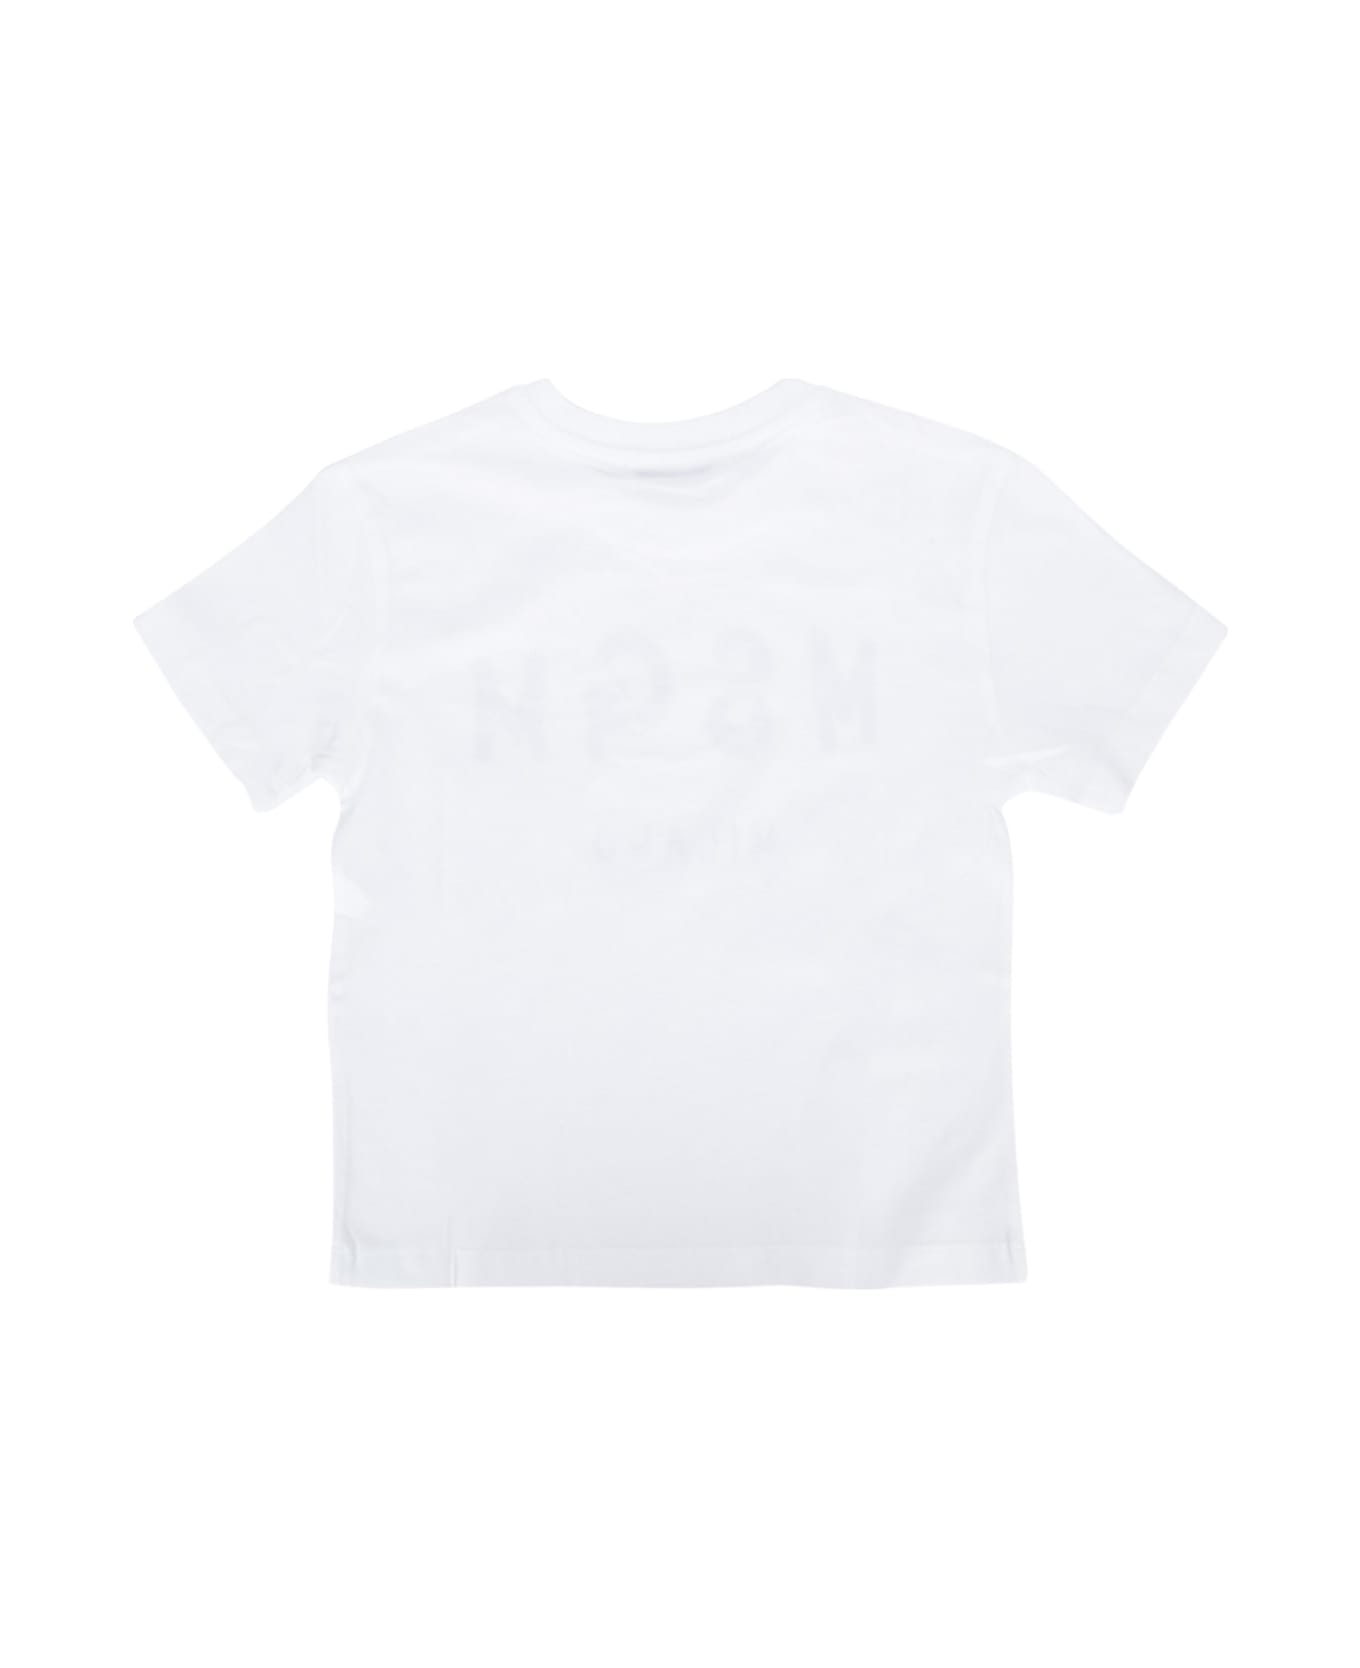 MSGM T-shirt - WHITE Tシャツ＆ポロシャツ